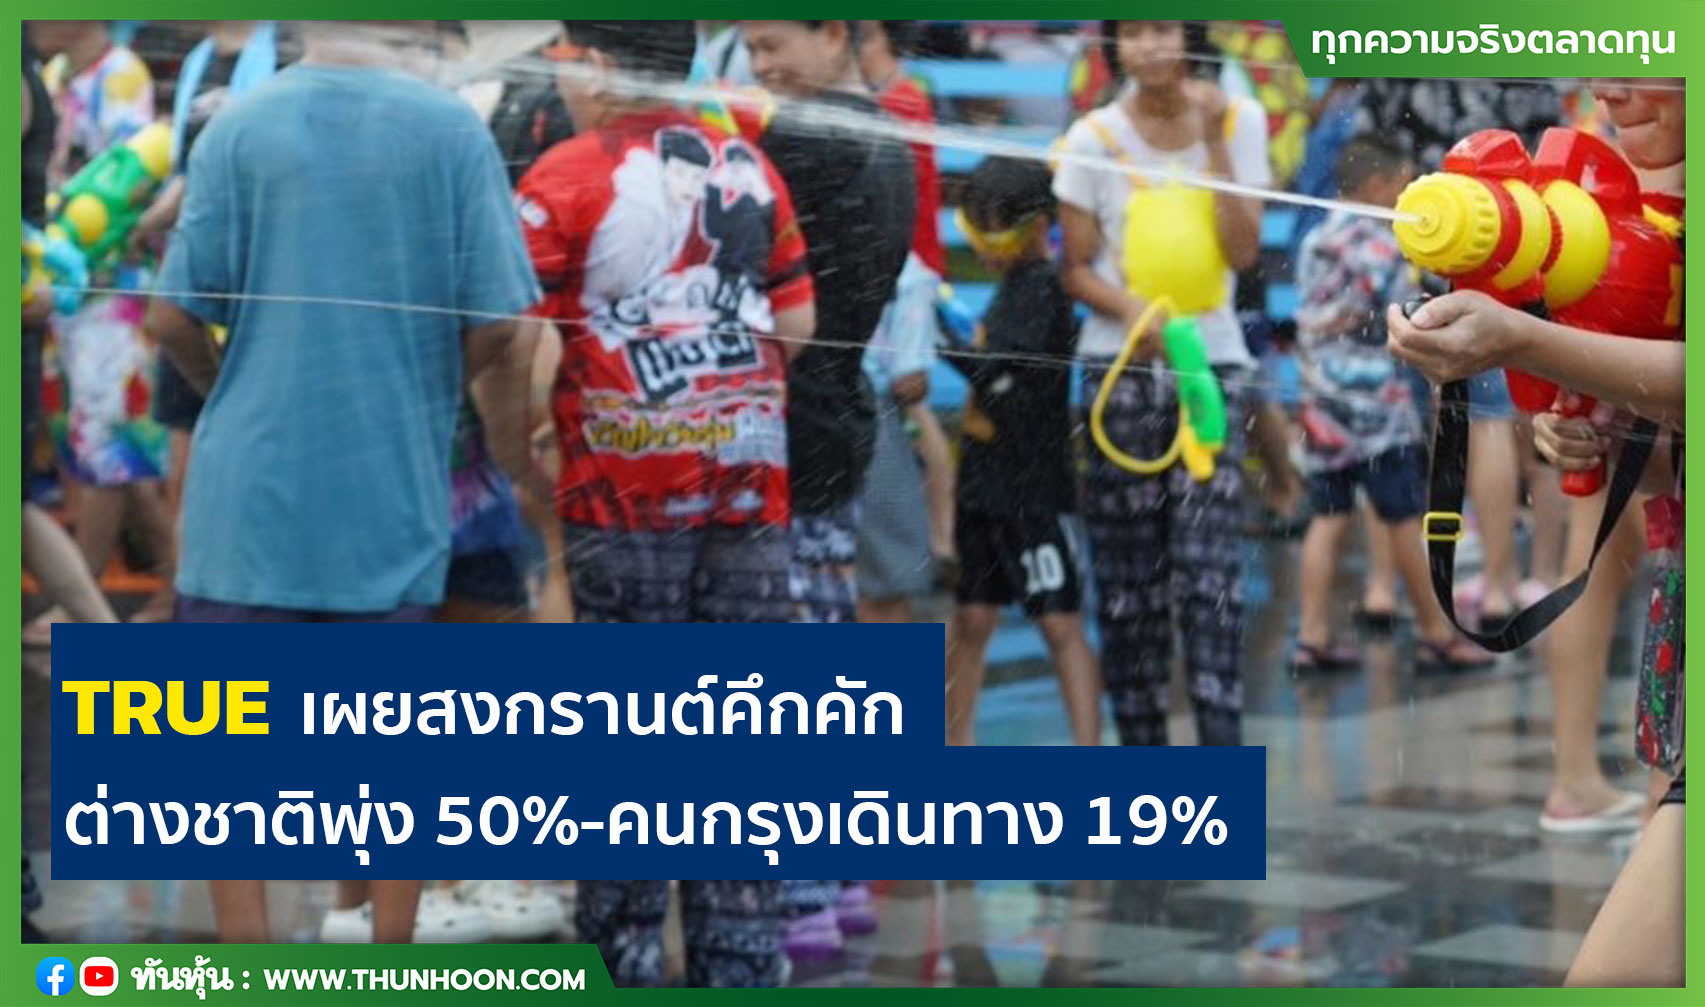 泰国泼水节赴泰外国游客增长50%，中国成泰出游热门目的地